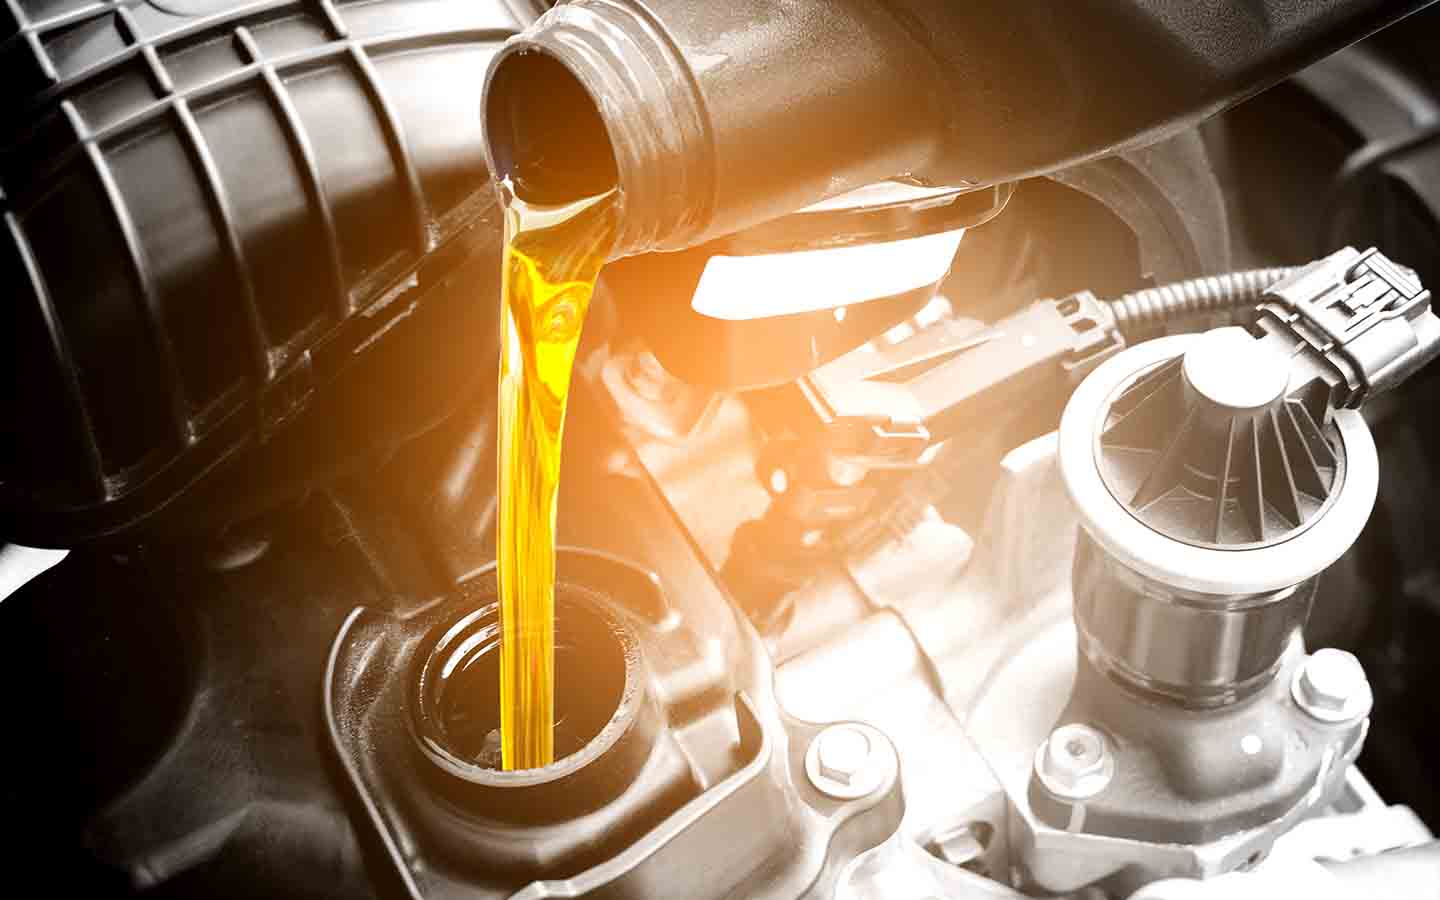 проверка уровня жидкости в автомобиле является одной из эффективных идей технического обслуживания внедорожников.